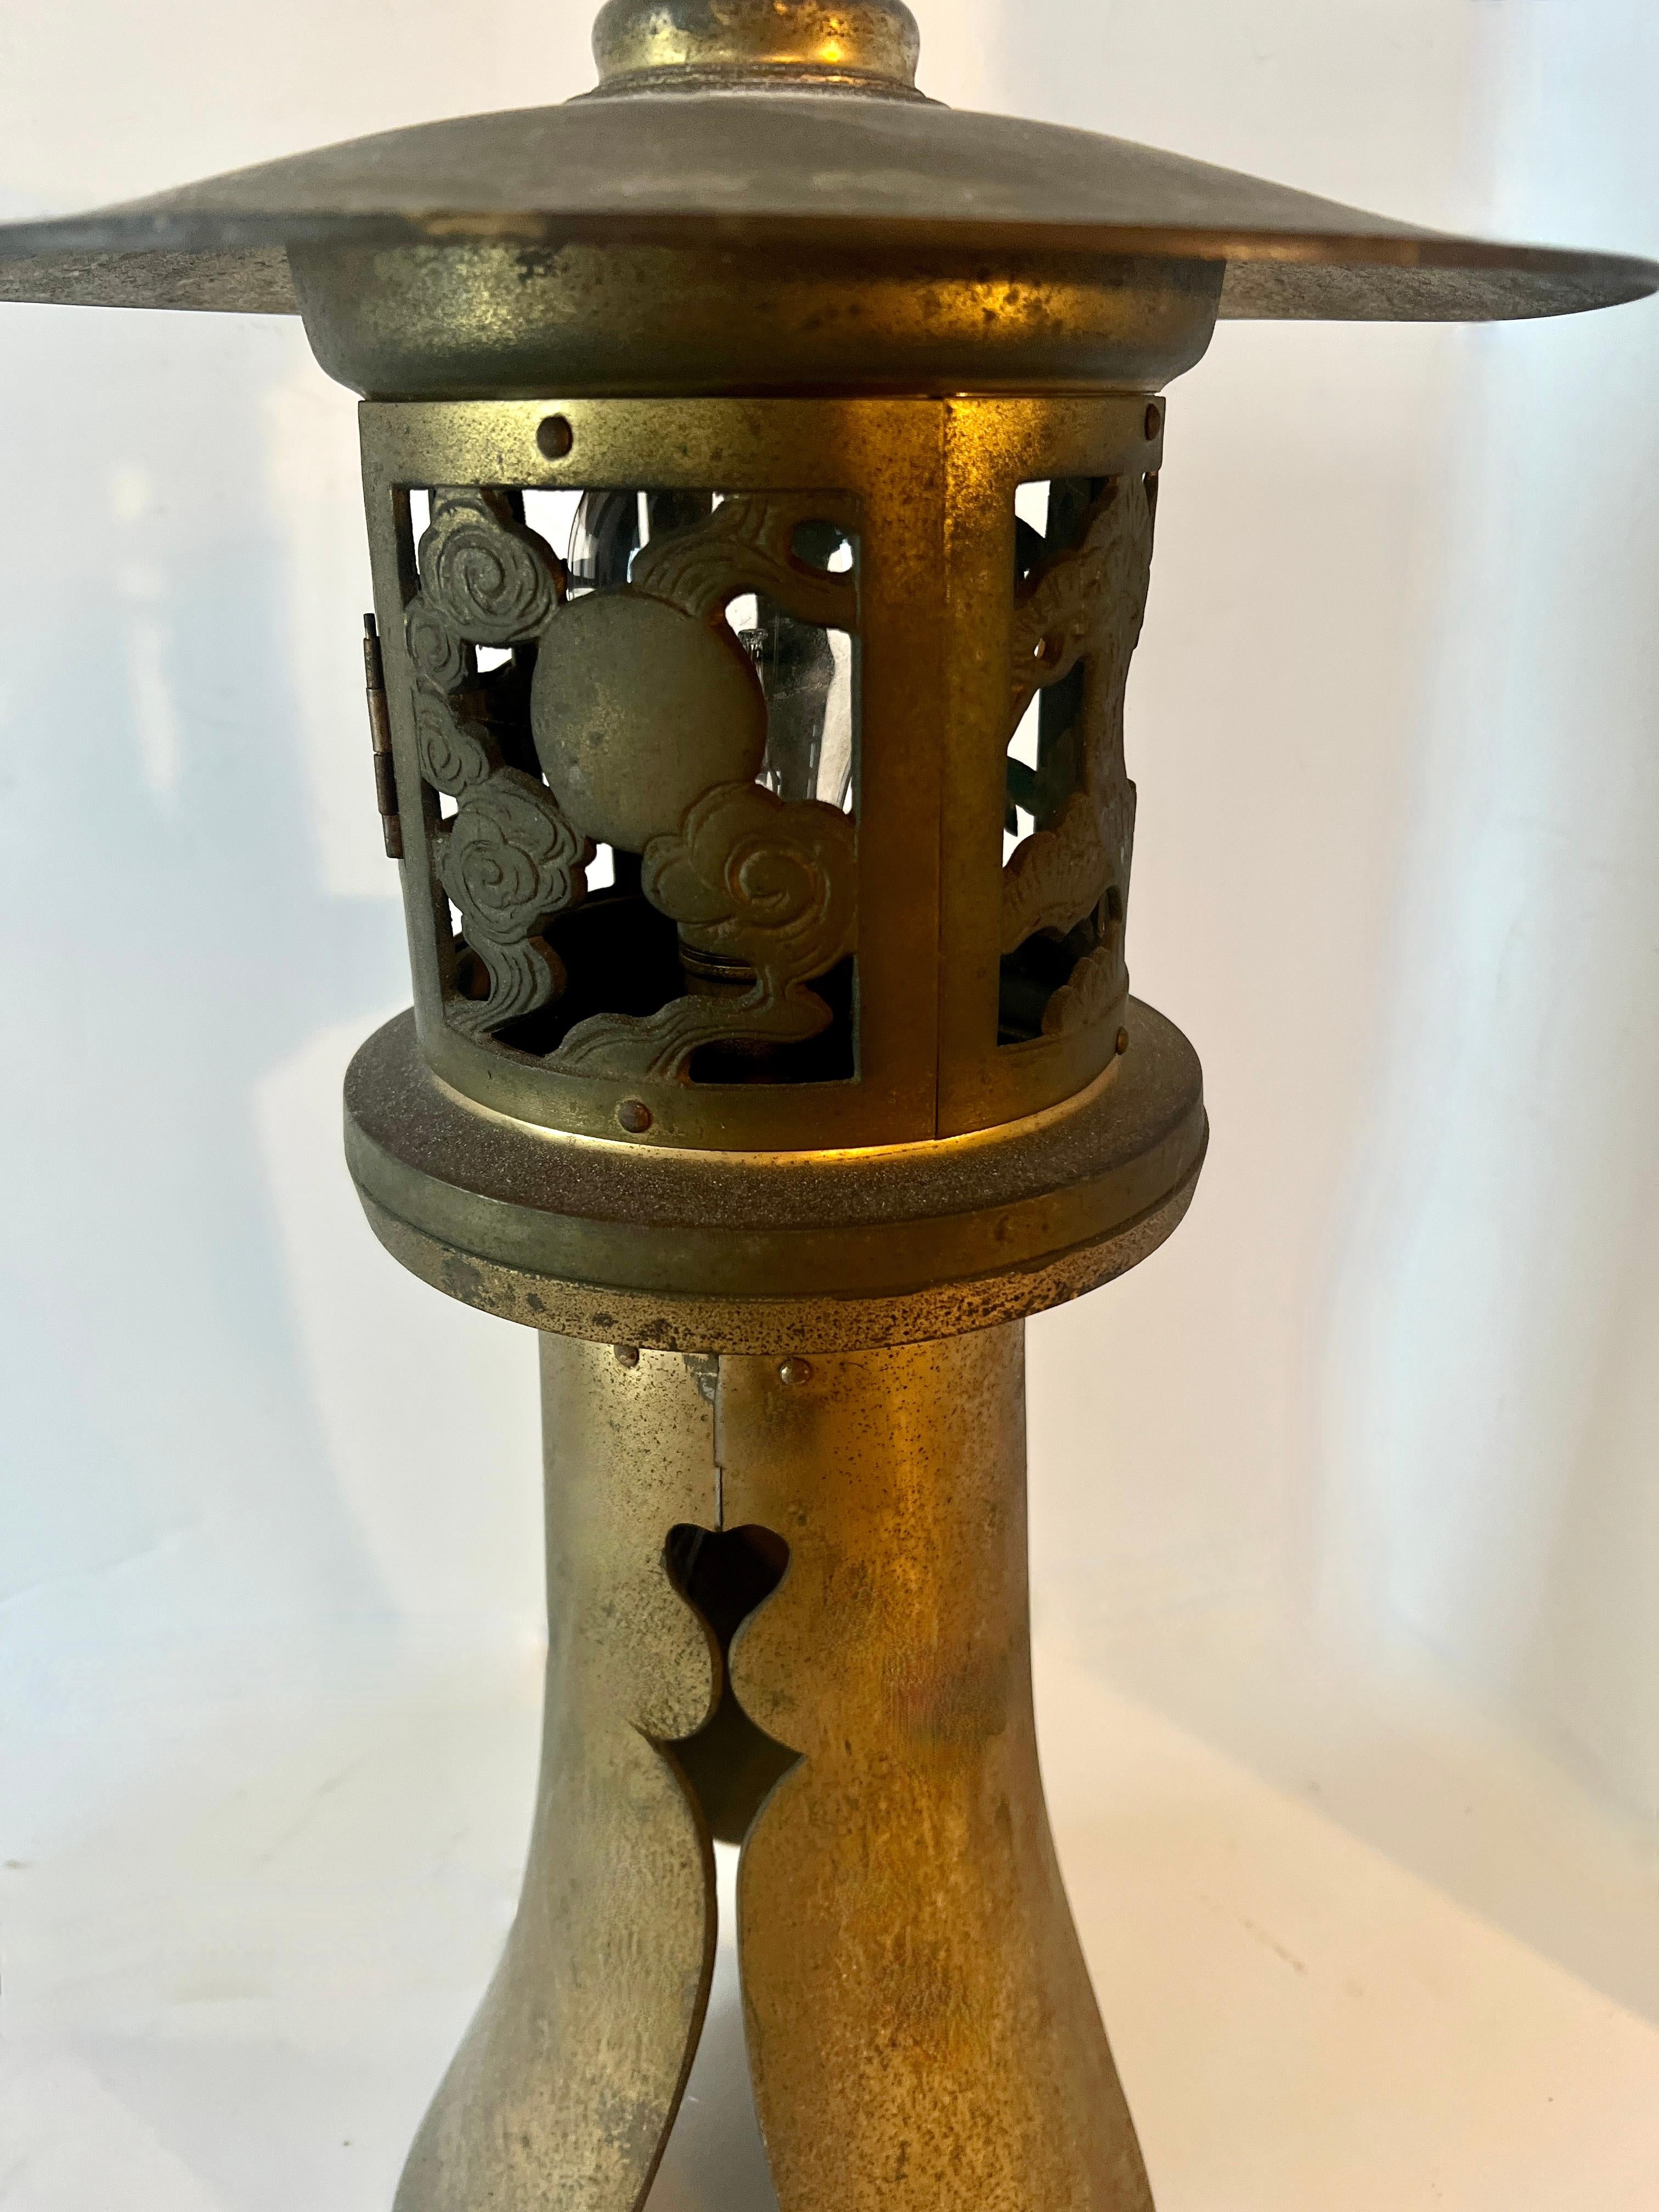 Lanterne japonaise de style pagode qui s'allume à l'électricité.  Le cadre en métal doré est bien patiné et indique une version plus ancienne d'une lanterne éclairée à la bougie.

La forme et la lumière projetées sont spectaculaires.  Il s'intègre